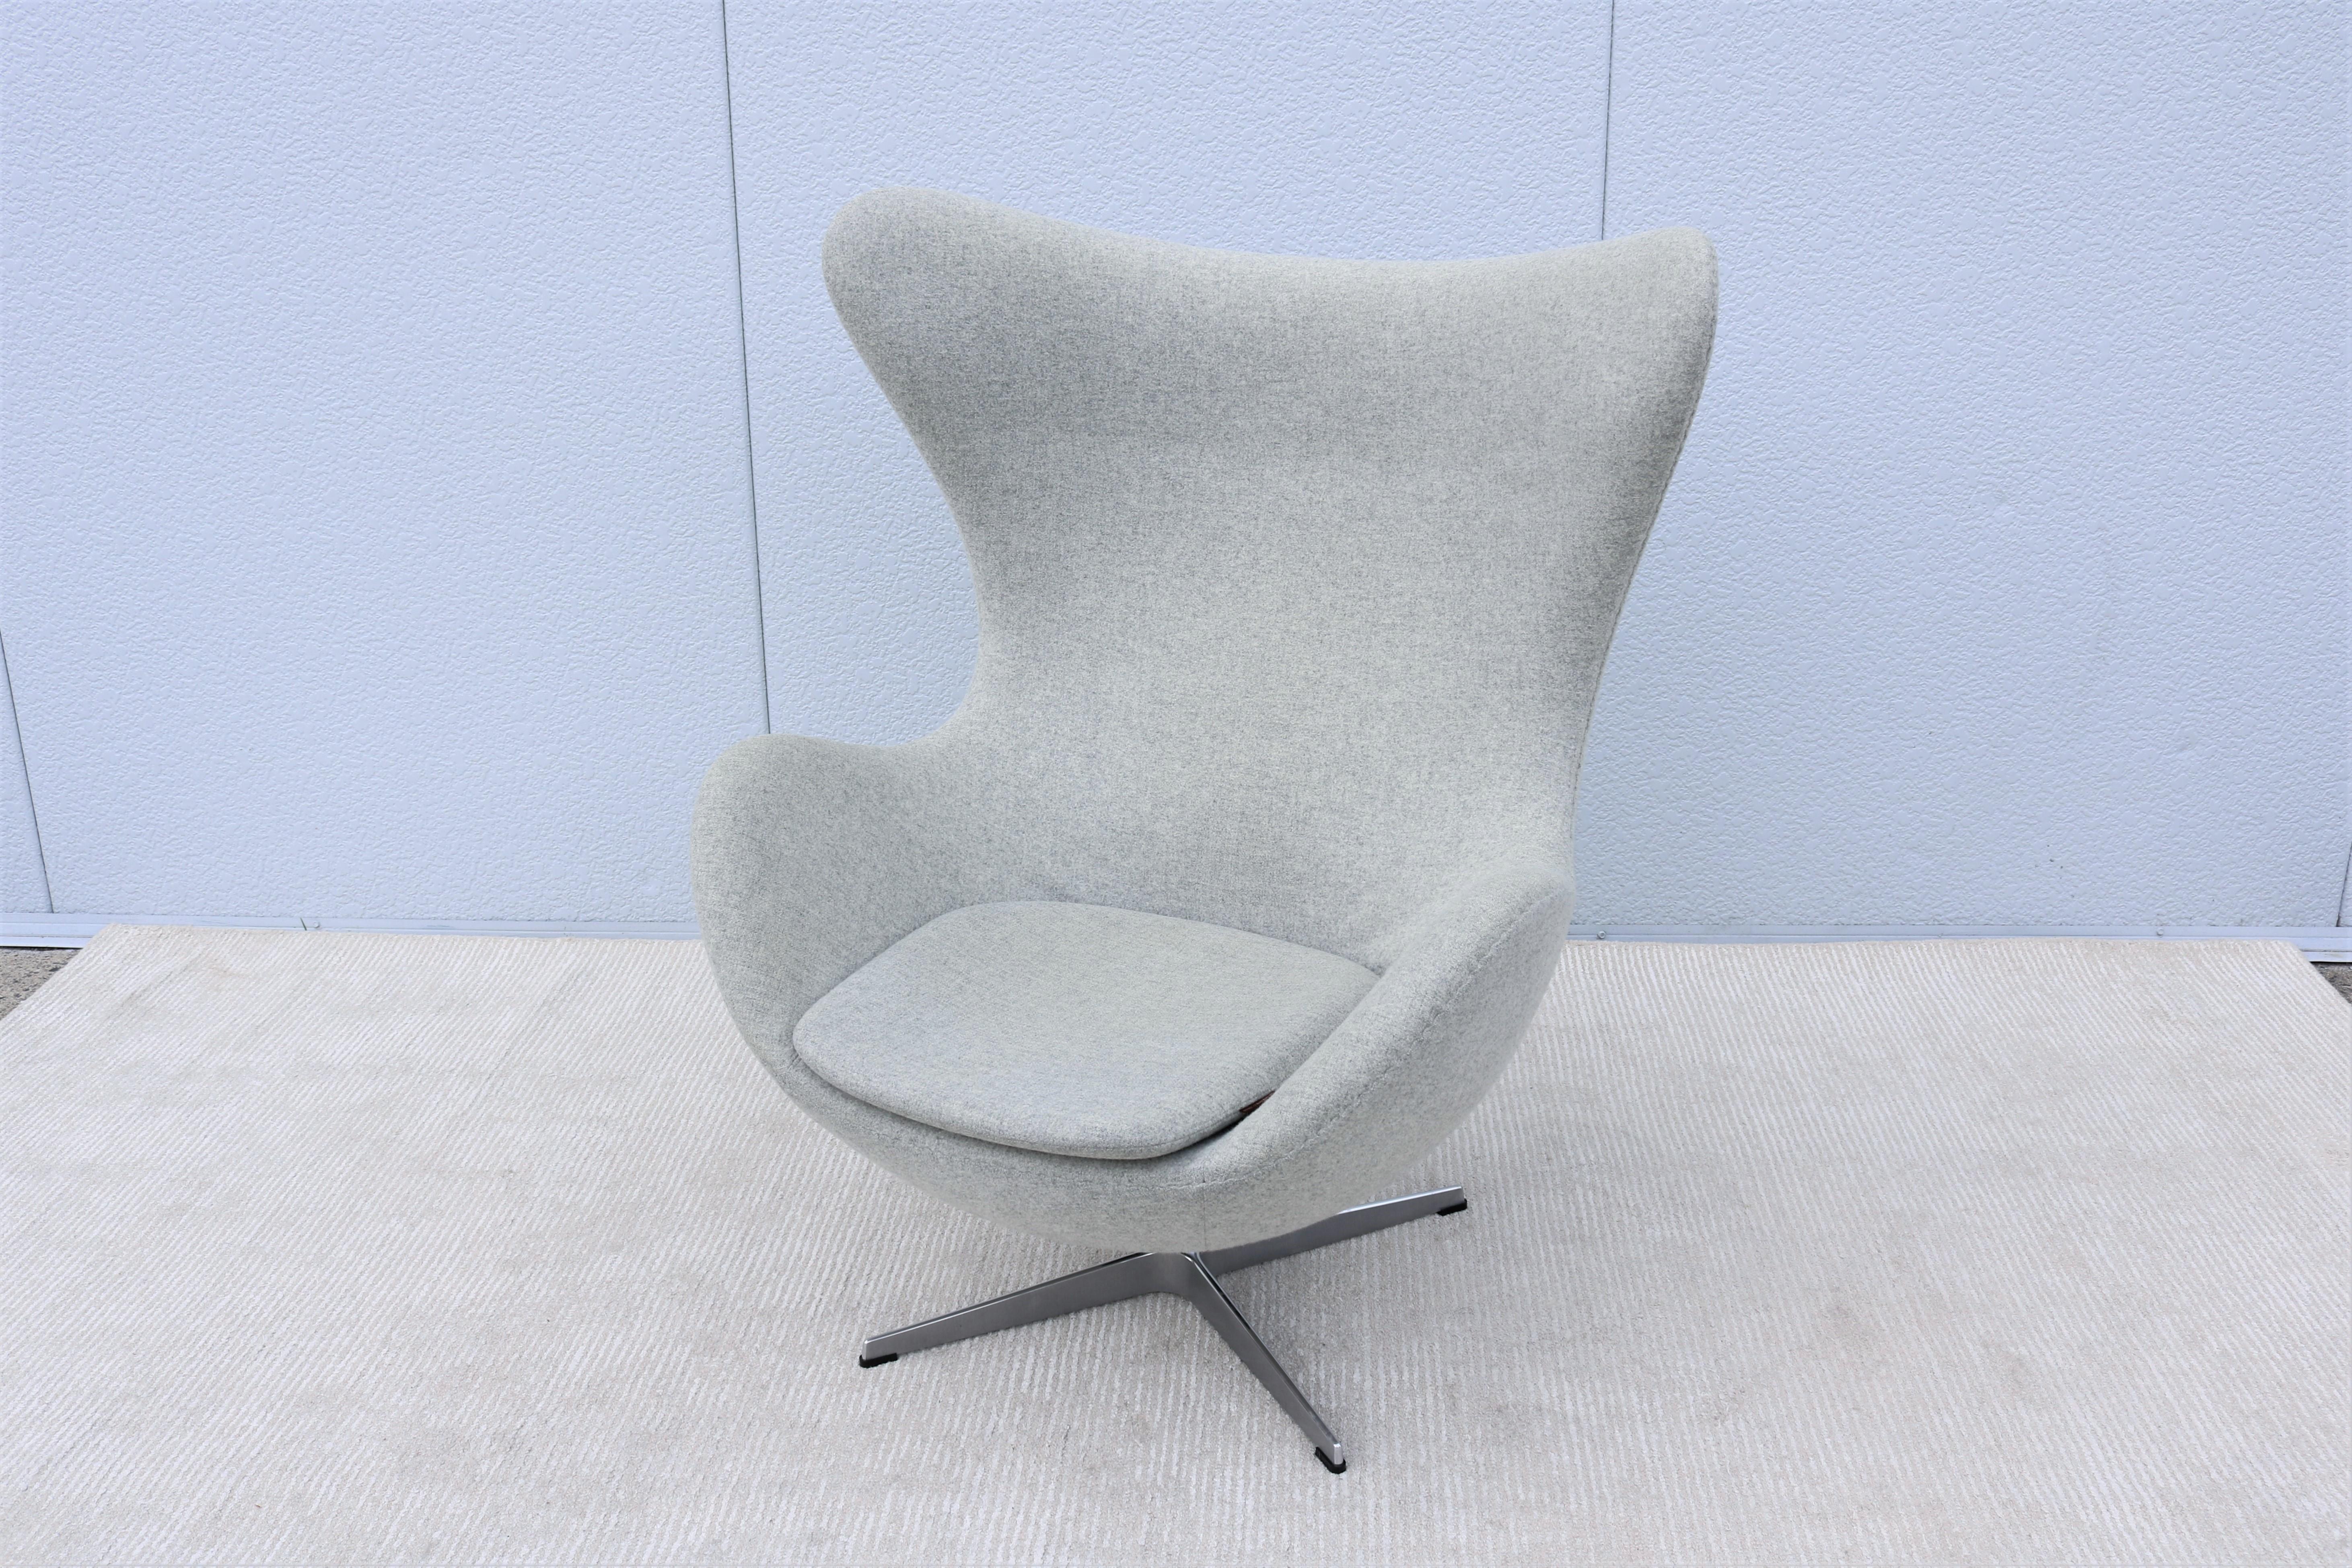 Der wunderschöne Egg-Stuhl von Arne Jacobsen ist ein unvergängliches dänisches Design-Meisterwerk, wie ein Bildhauer.
Jacobsen experimentierte in seiner Garage mit Draht und Gips, um die perfekte Form der Schale zu finden.
Jacobsen entwarf das Ei